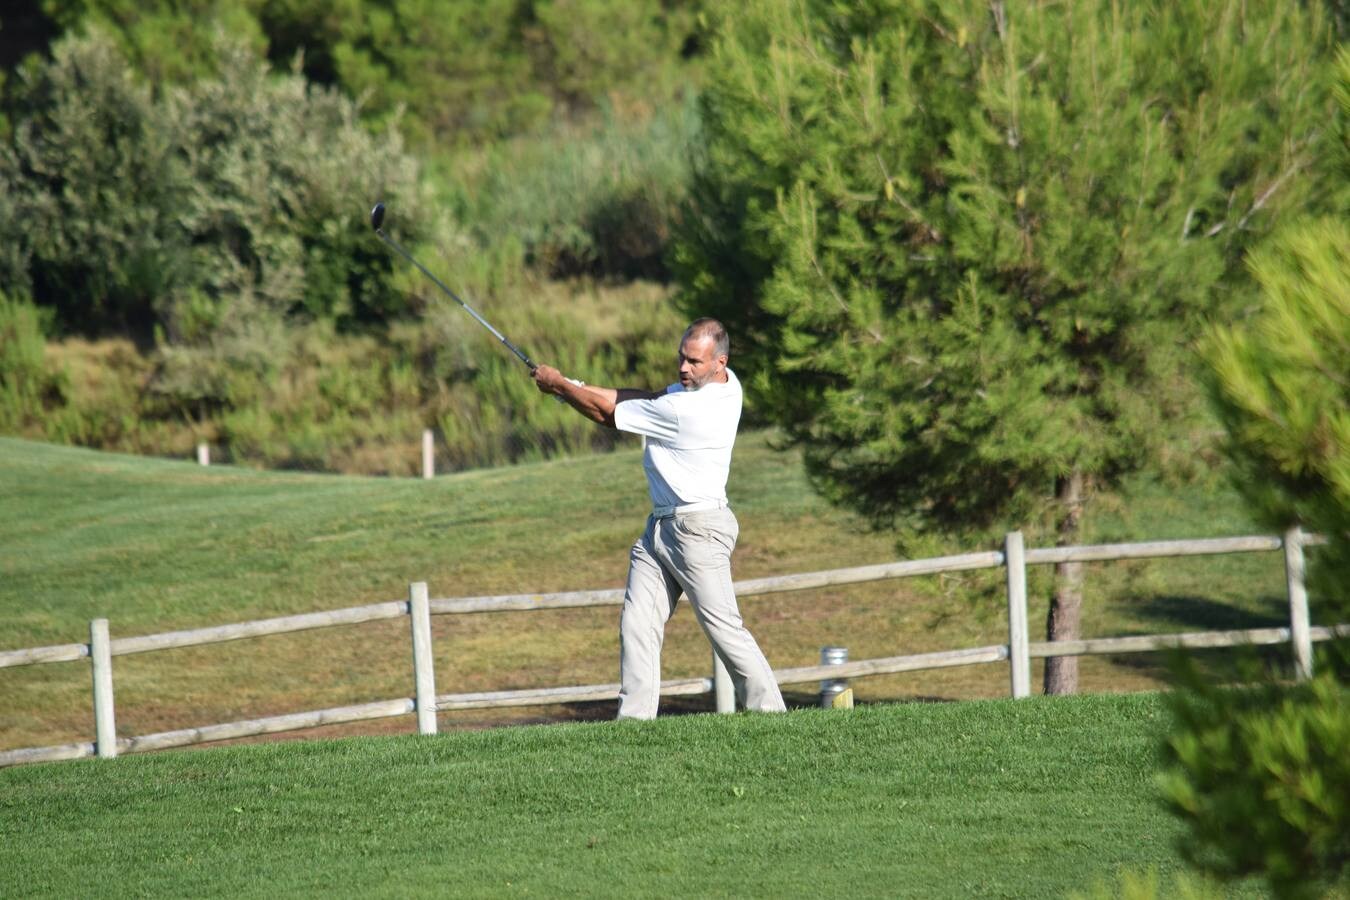 Los jugadores disfrutaron de una gran jornada en el Torneo Viña Ijalba, de la Liga de Golf Vino de lomejordelvinoderioja.com.